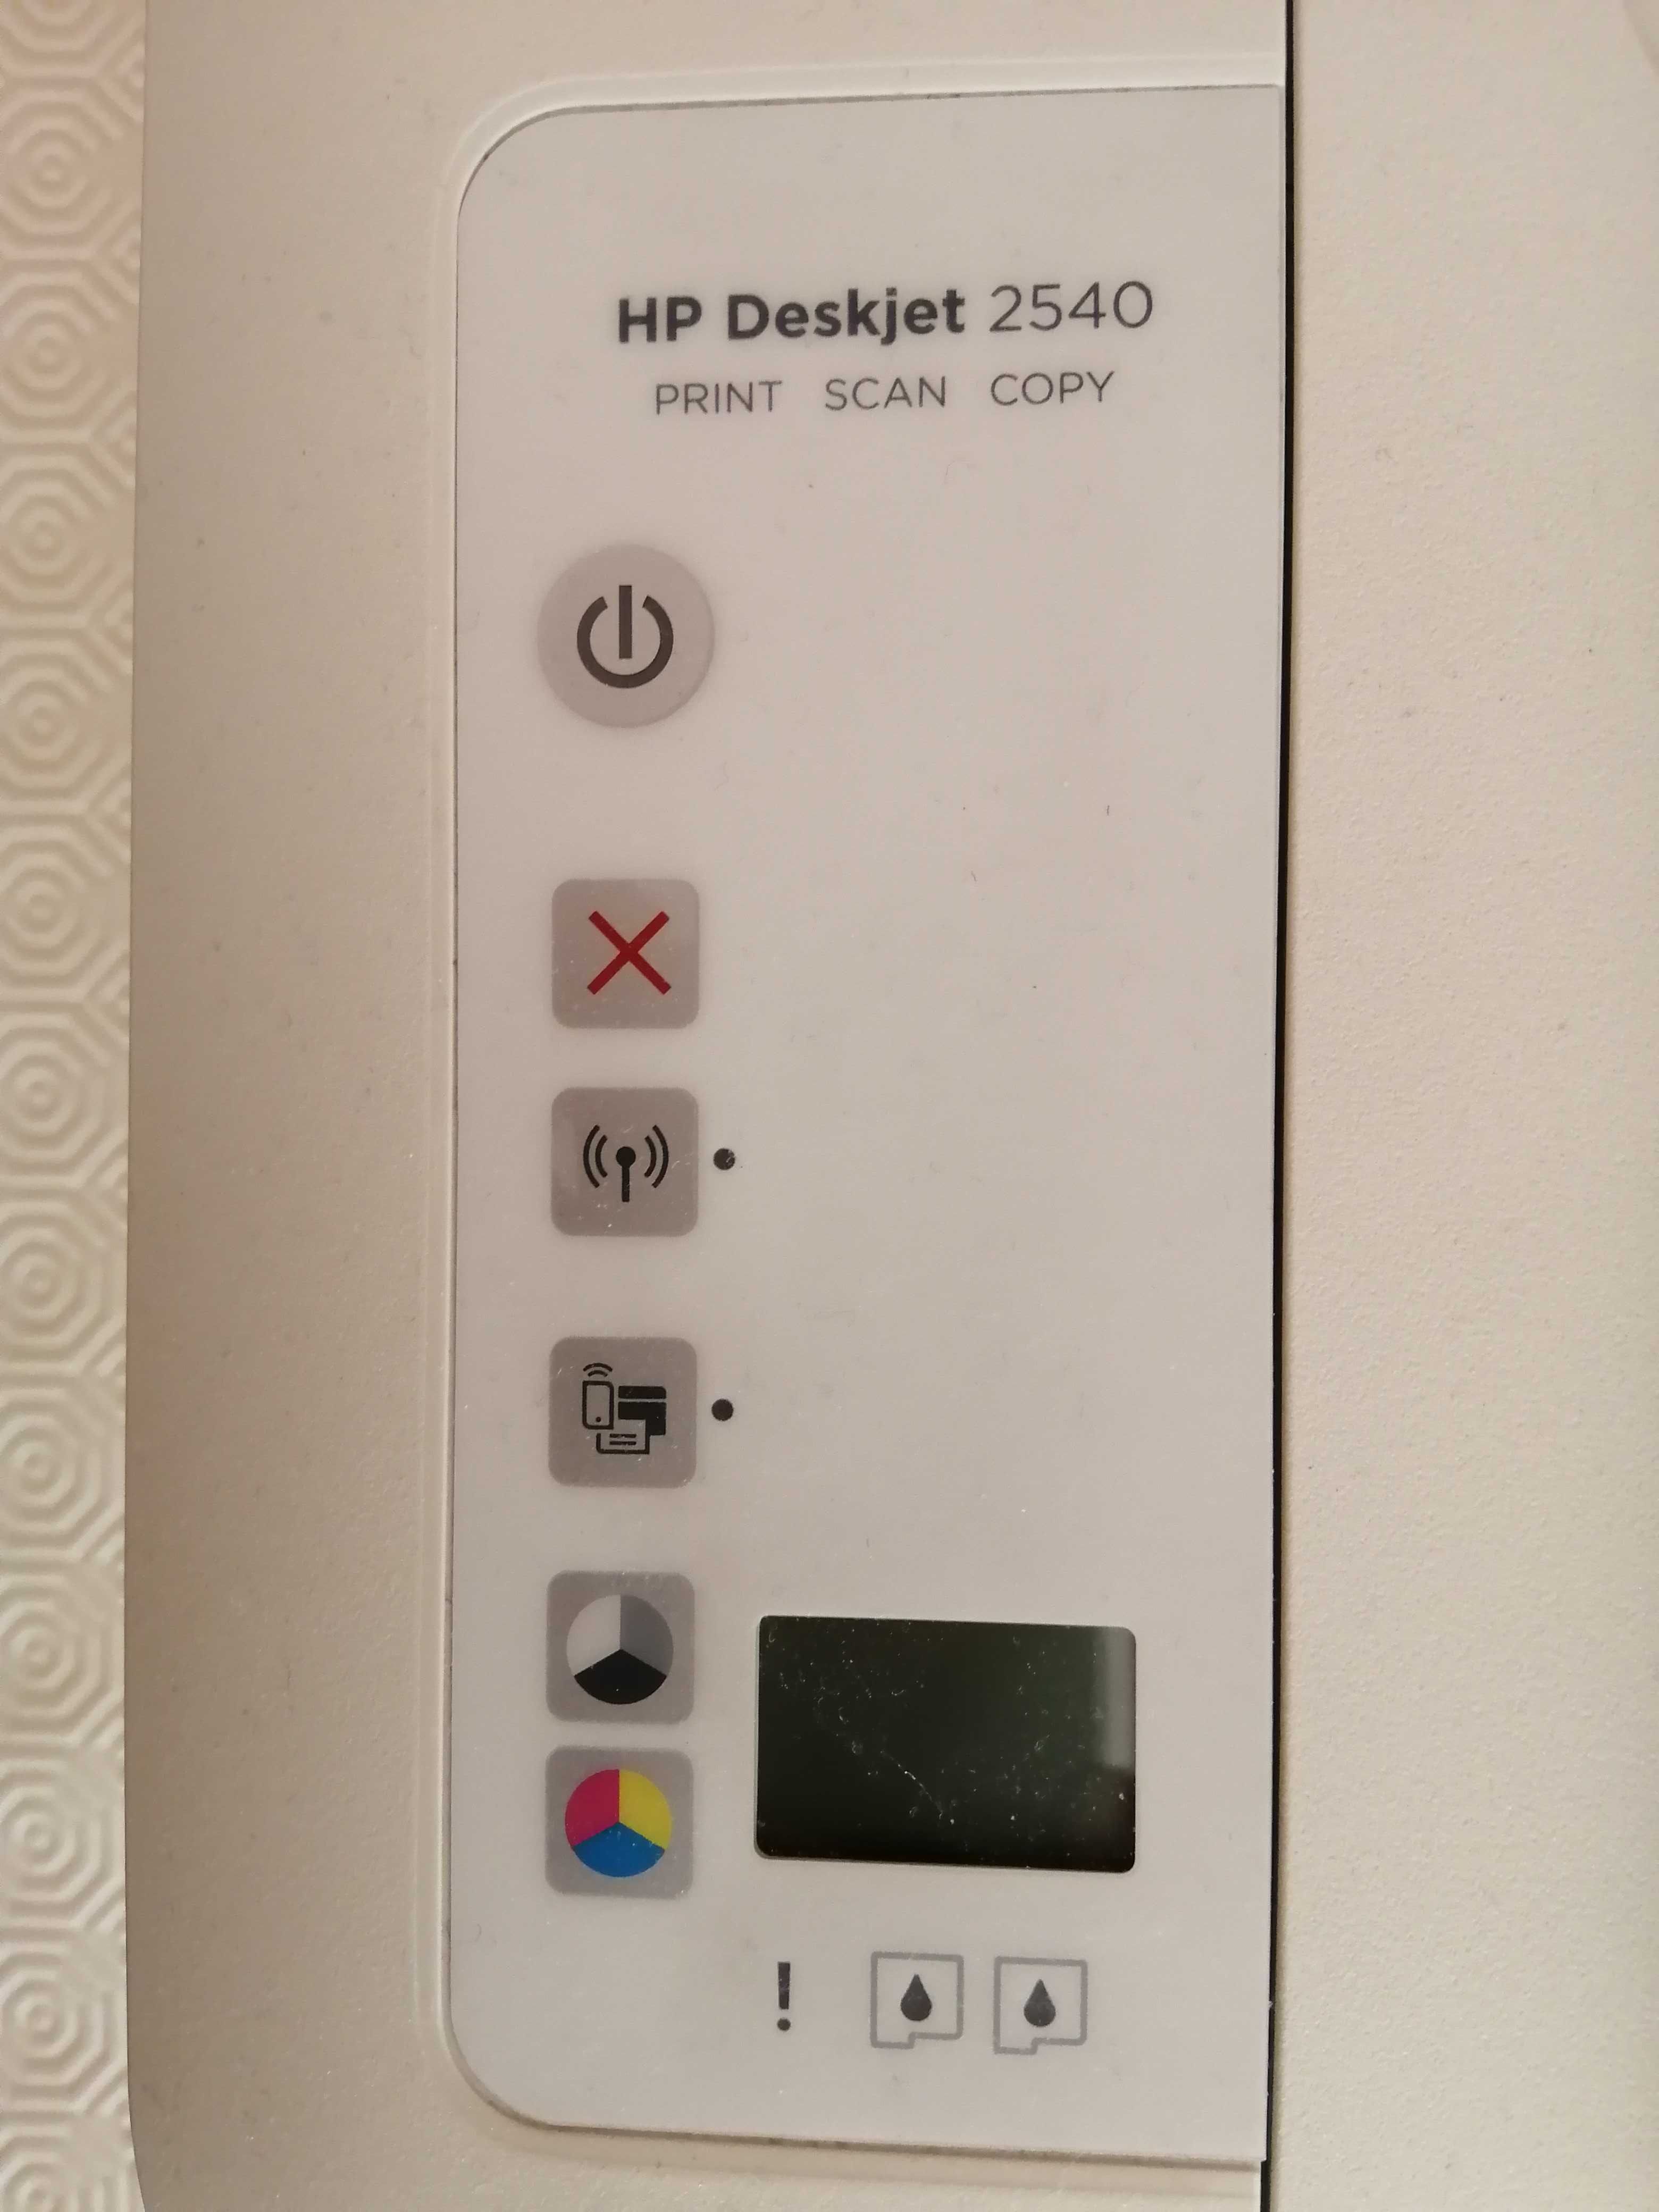 Impressora HP Deskjet 2540 all in one